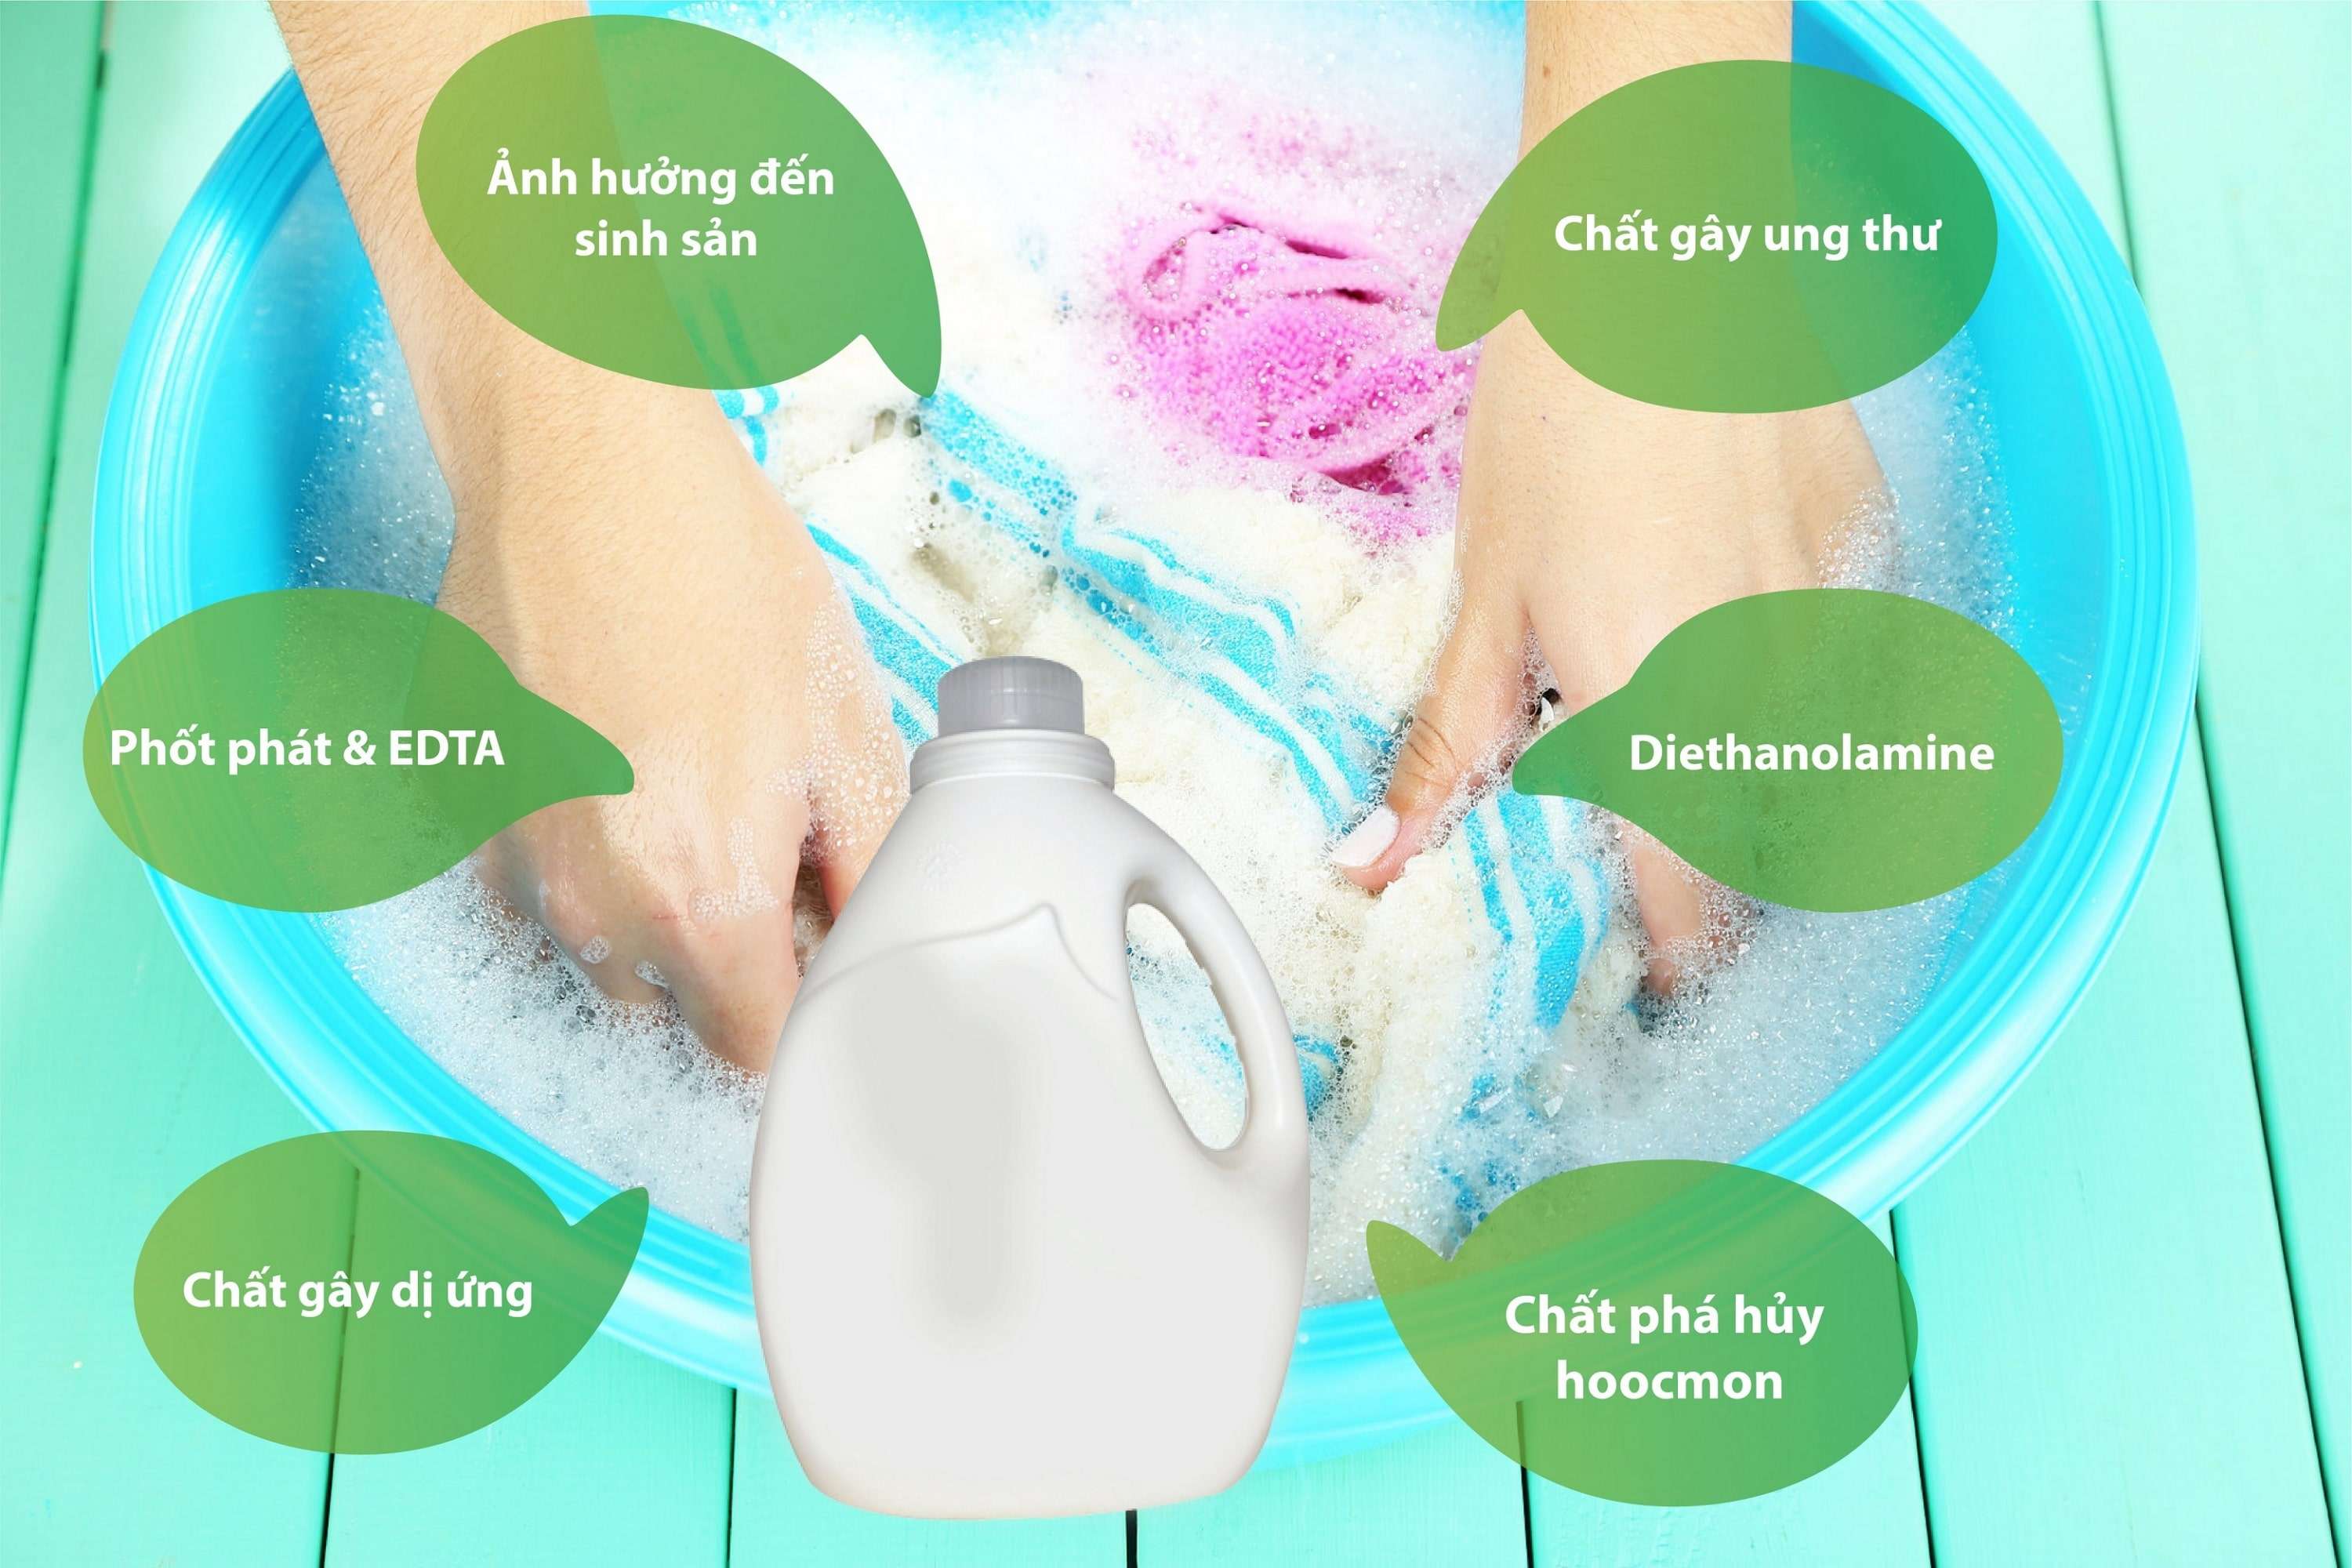 8 chất độc hại trong bột giặt